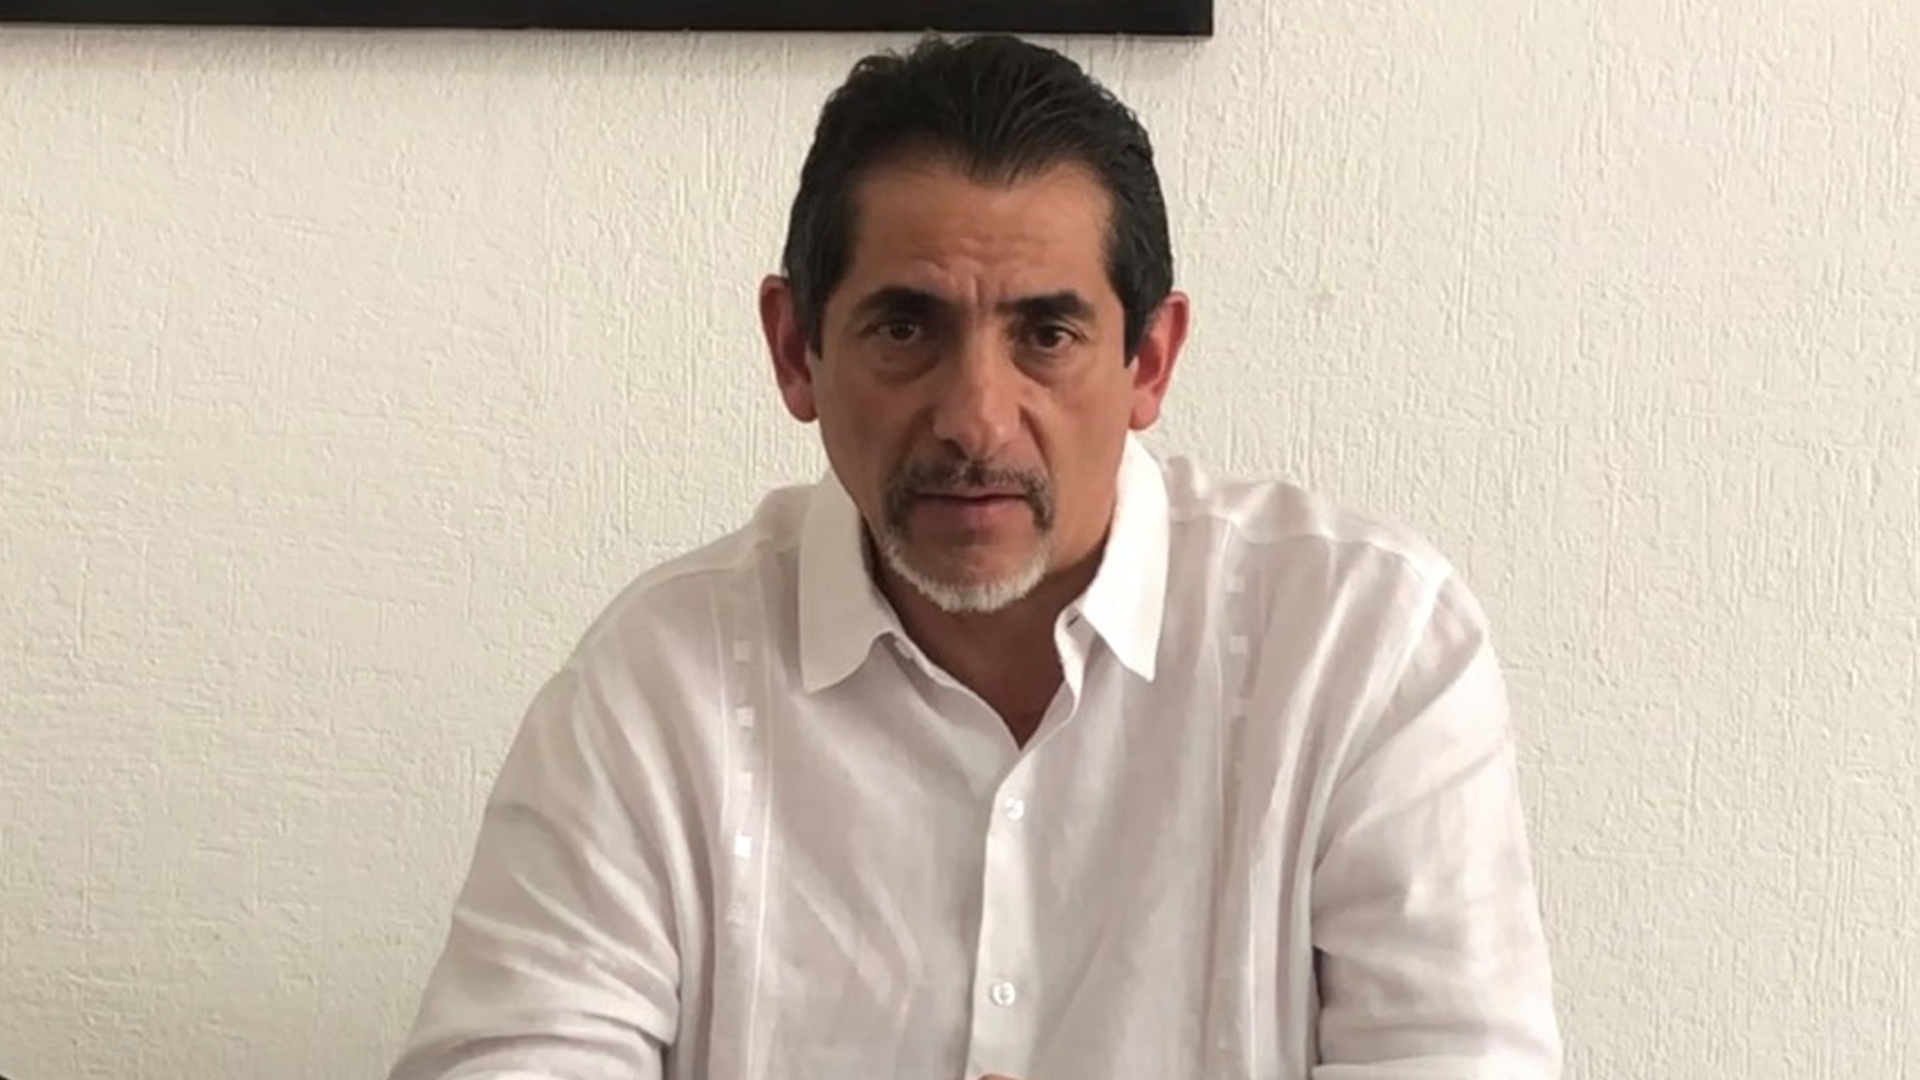 SECRETARÍA DE SALUD REPORTA SOSPECHOSO CASO DE CORONAVIRUS EN MORELOS